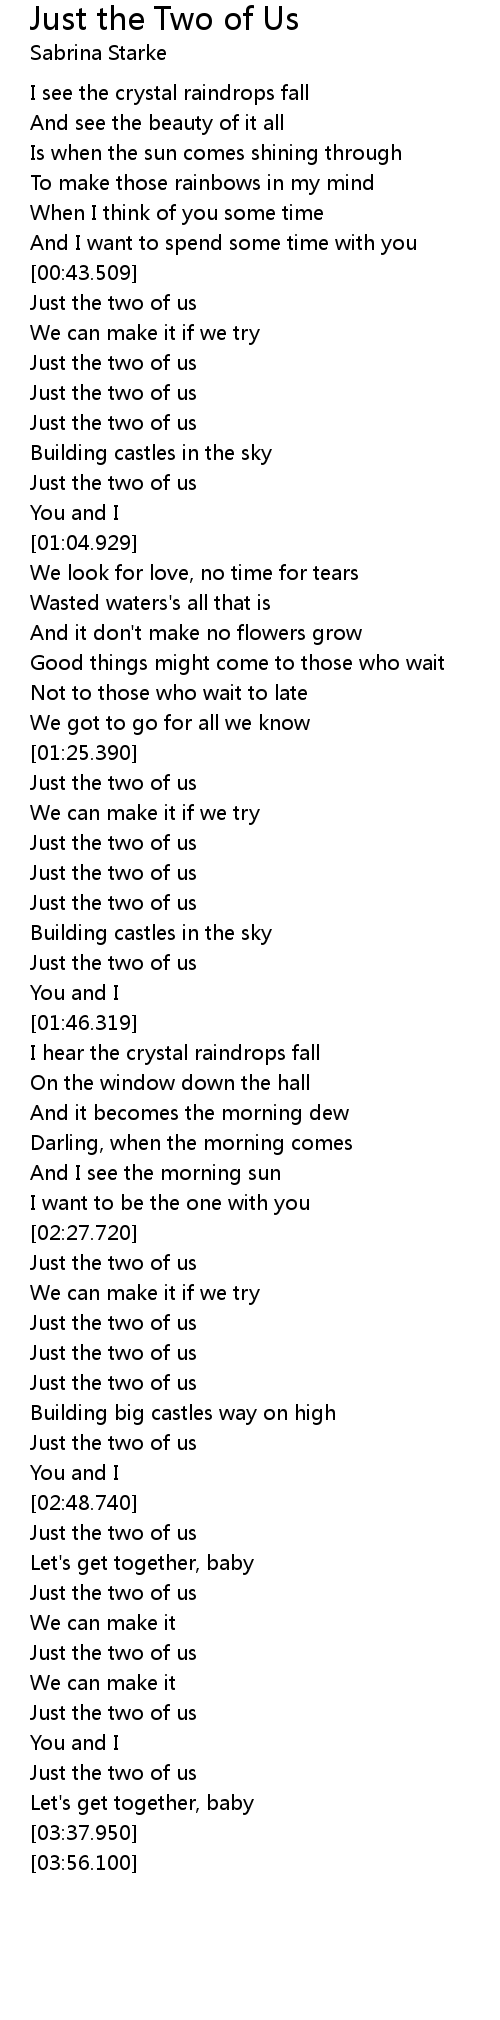 Two of Us Lyrics -  UK